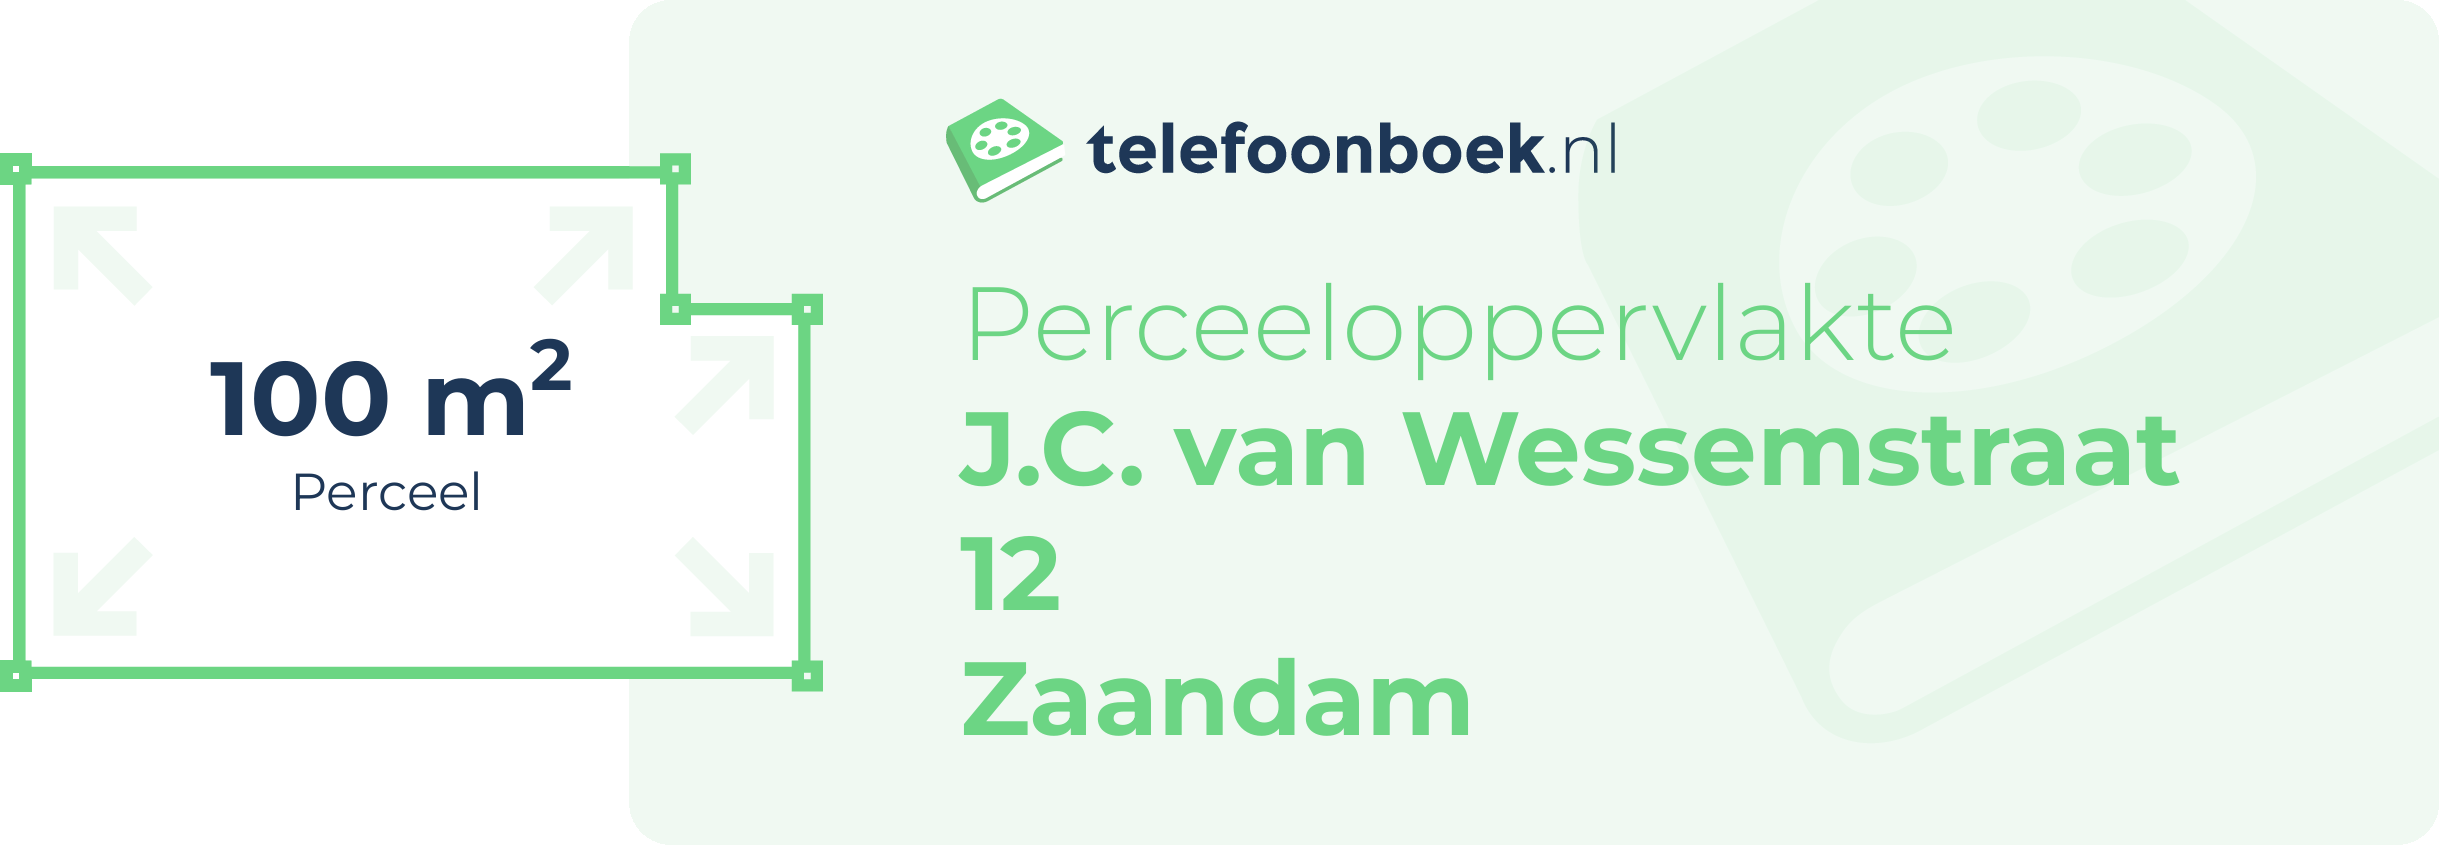 Perceeloppervlakte J.C. Van Wessemstraat 12 Zaandam